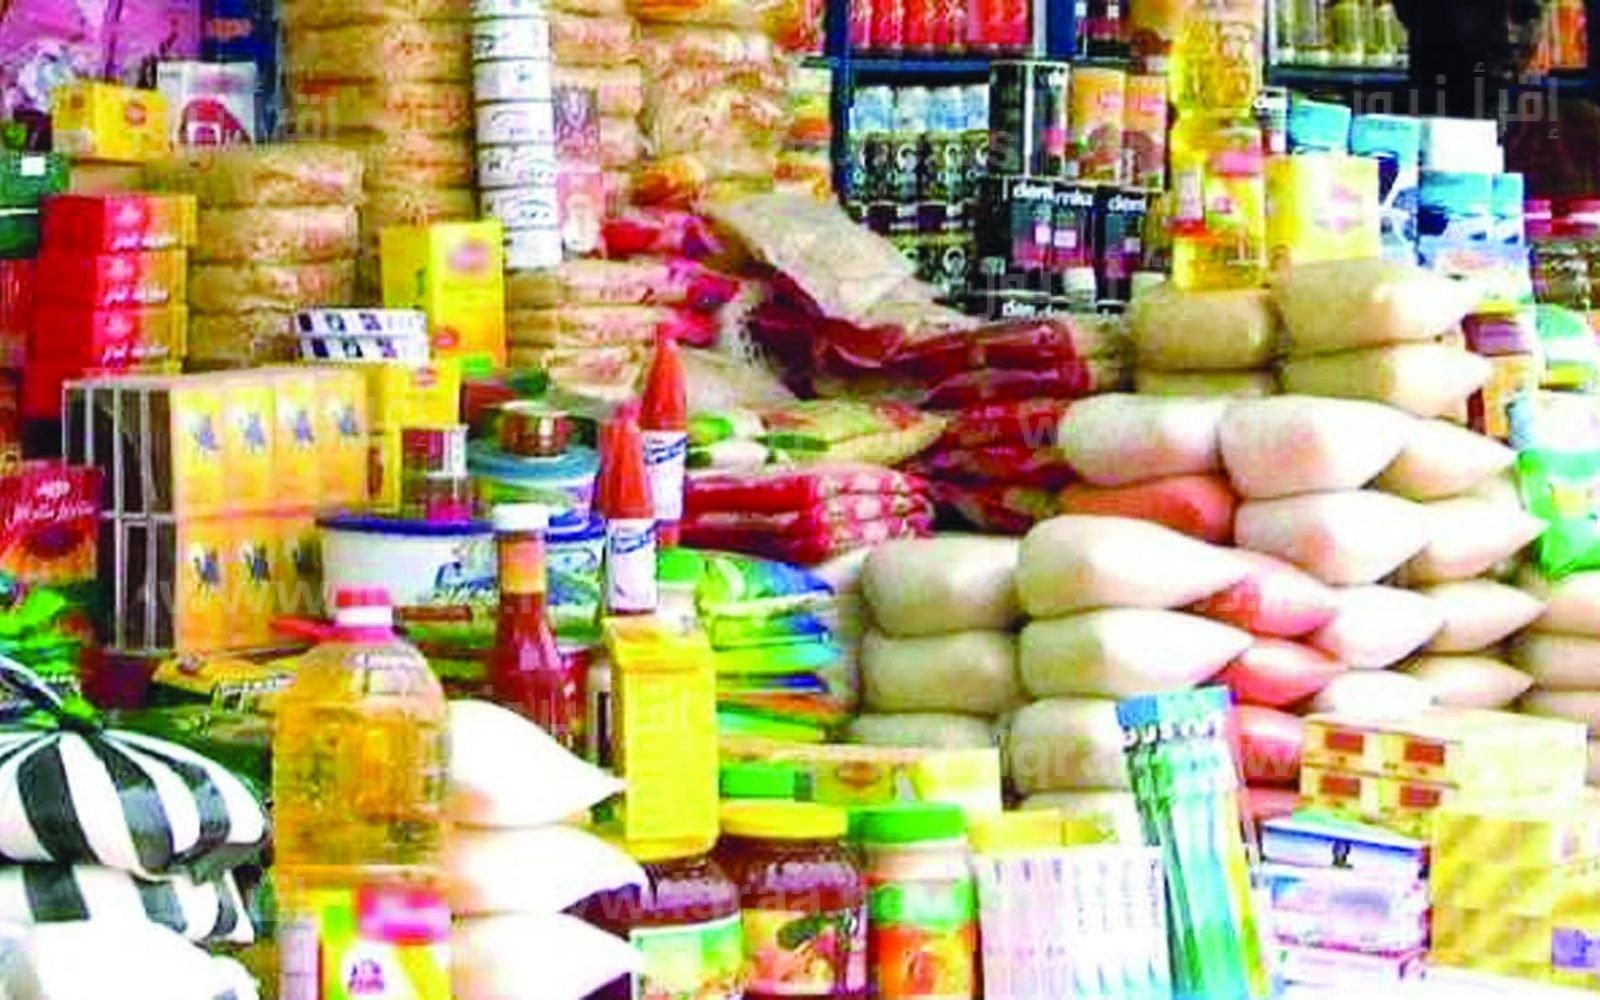 أسعار السلع الغذائية في معارض اهلا رمضان